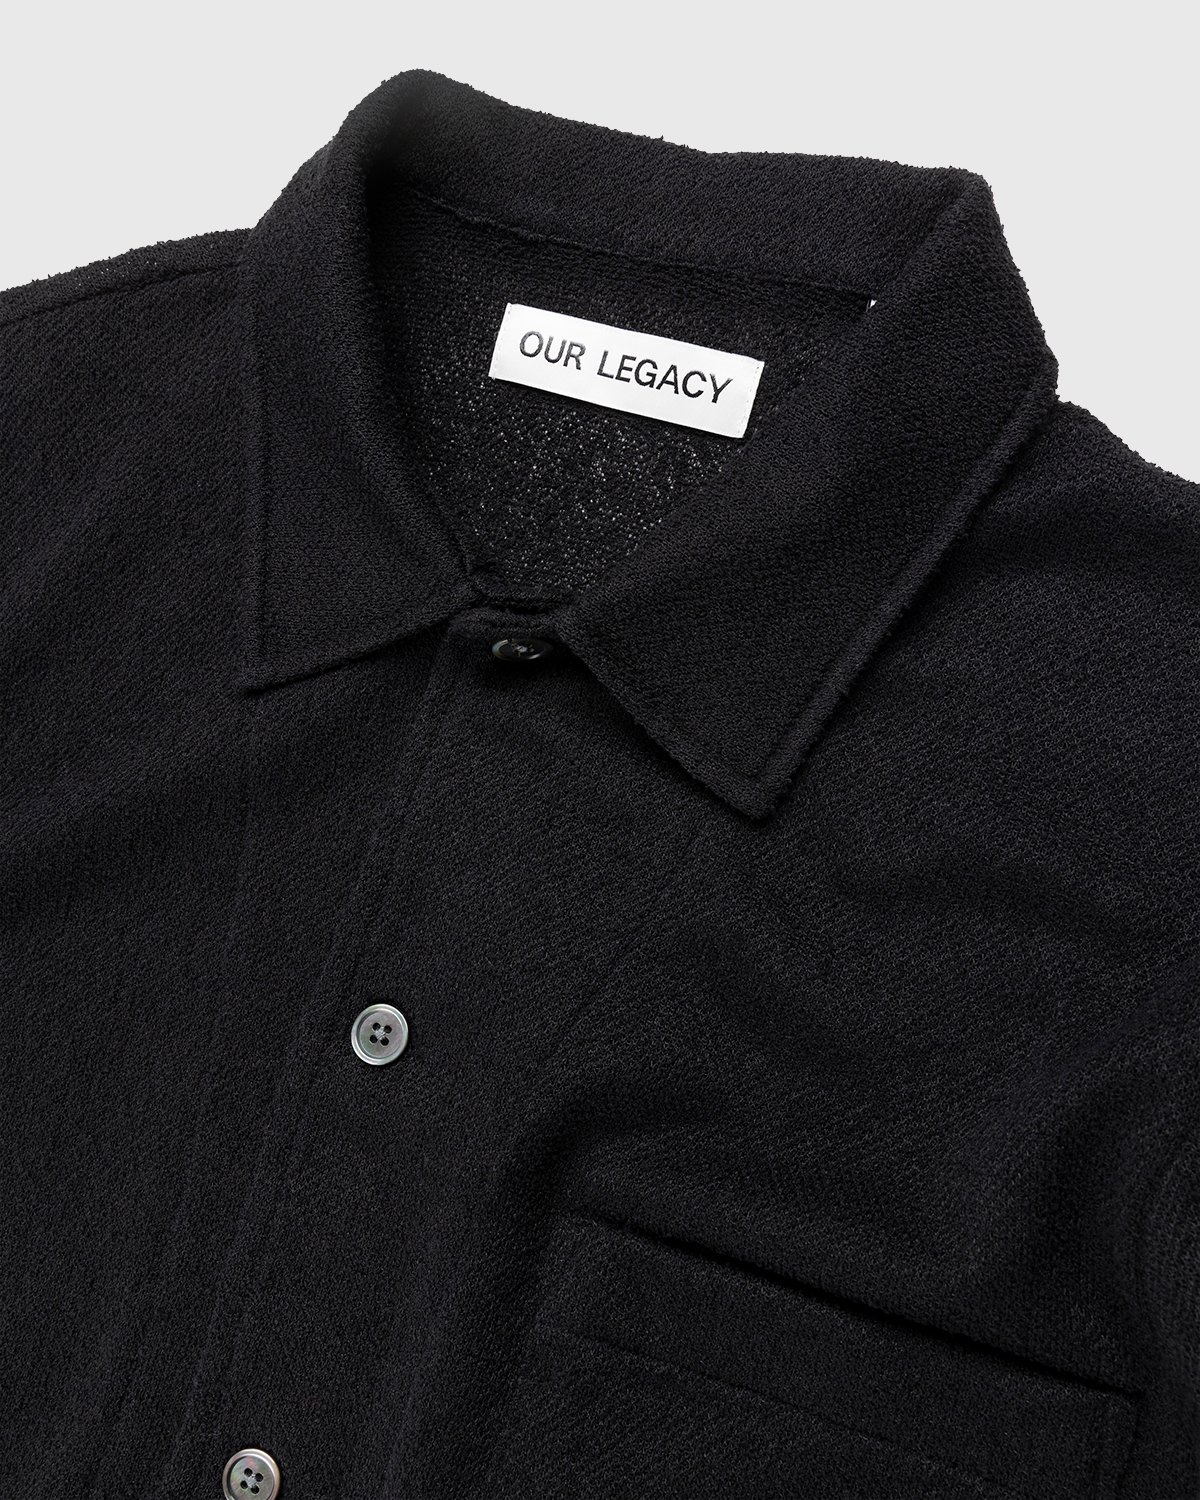 Our Legacy - Box Short Sleeve Shirt Black Boucle - Clothing - Black - Image 3